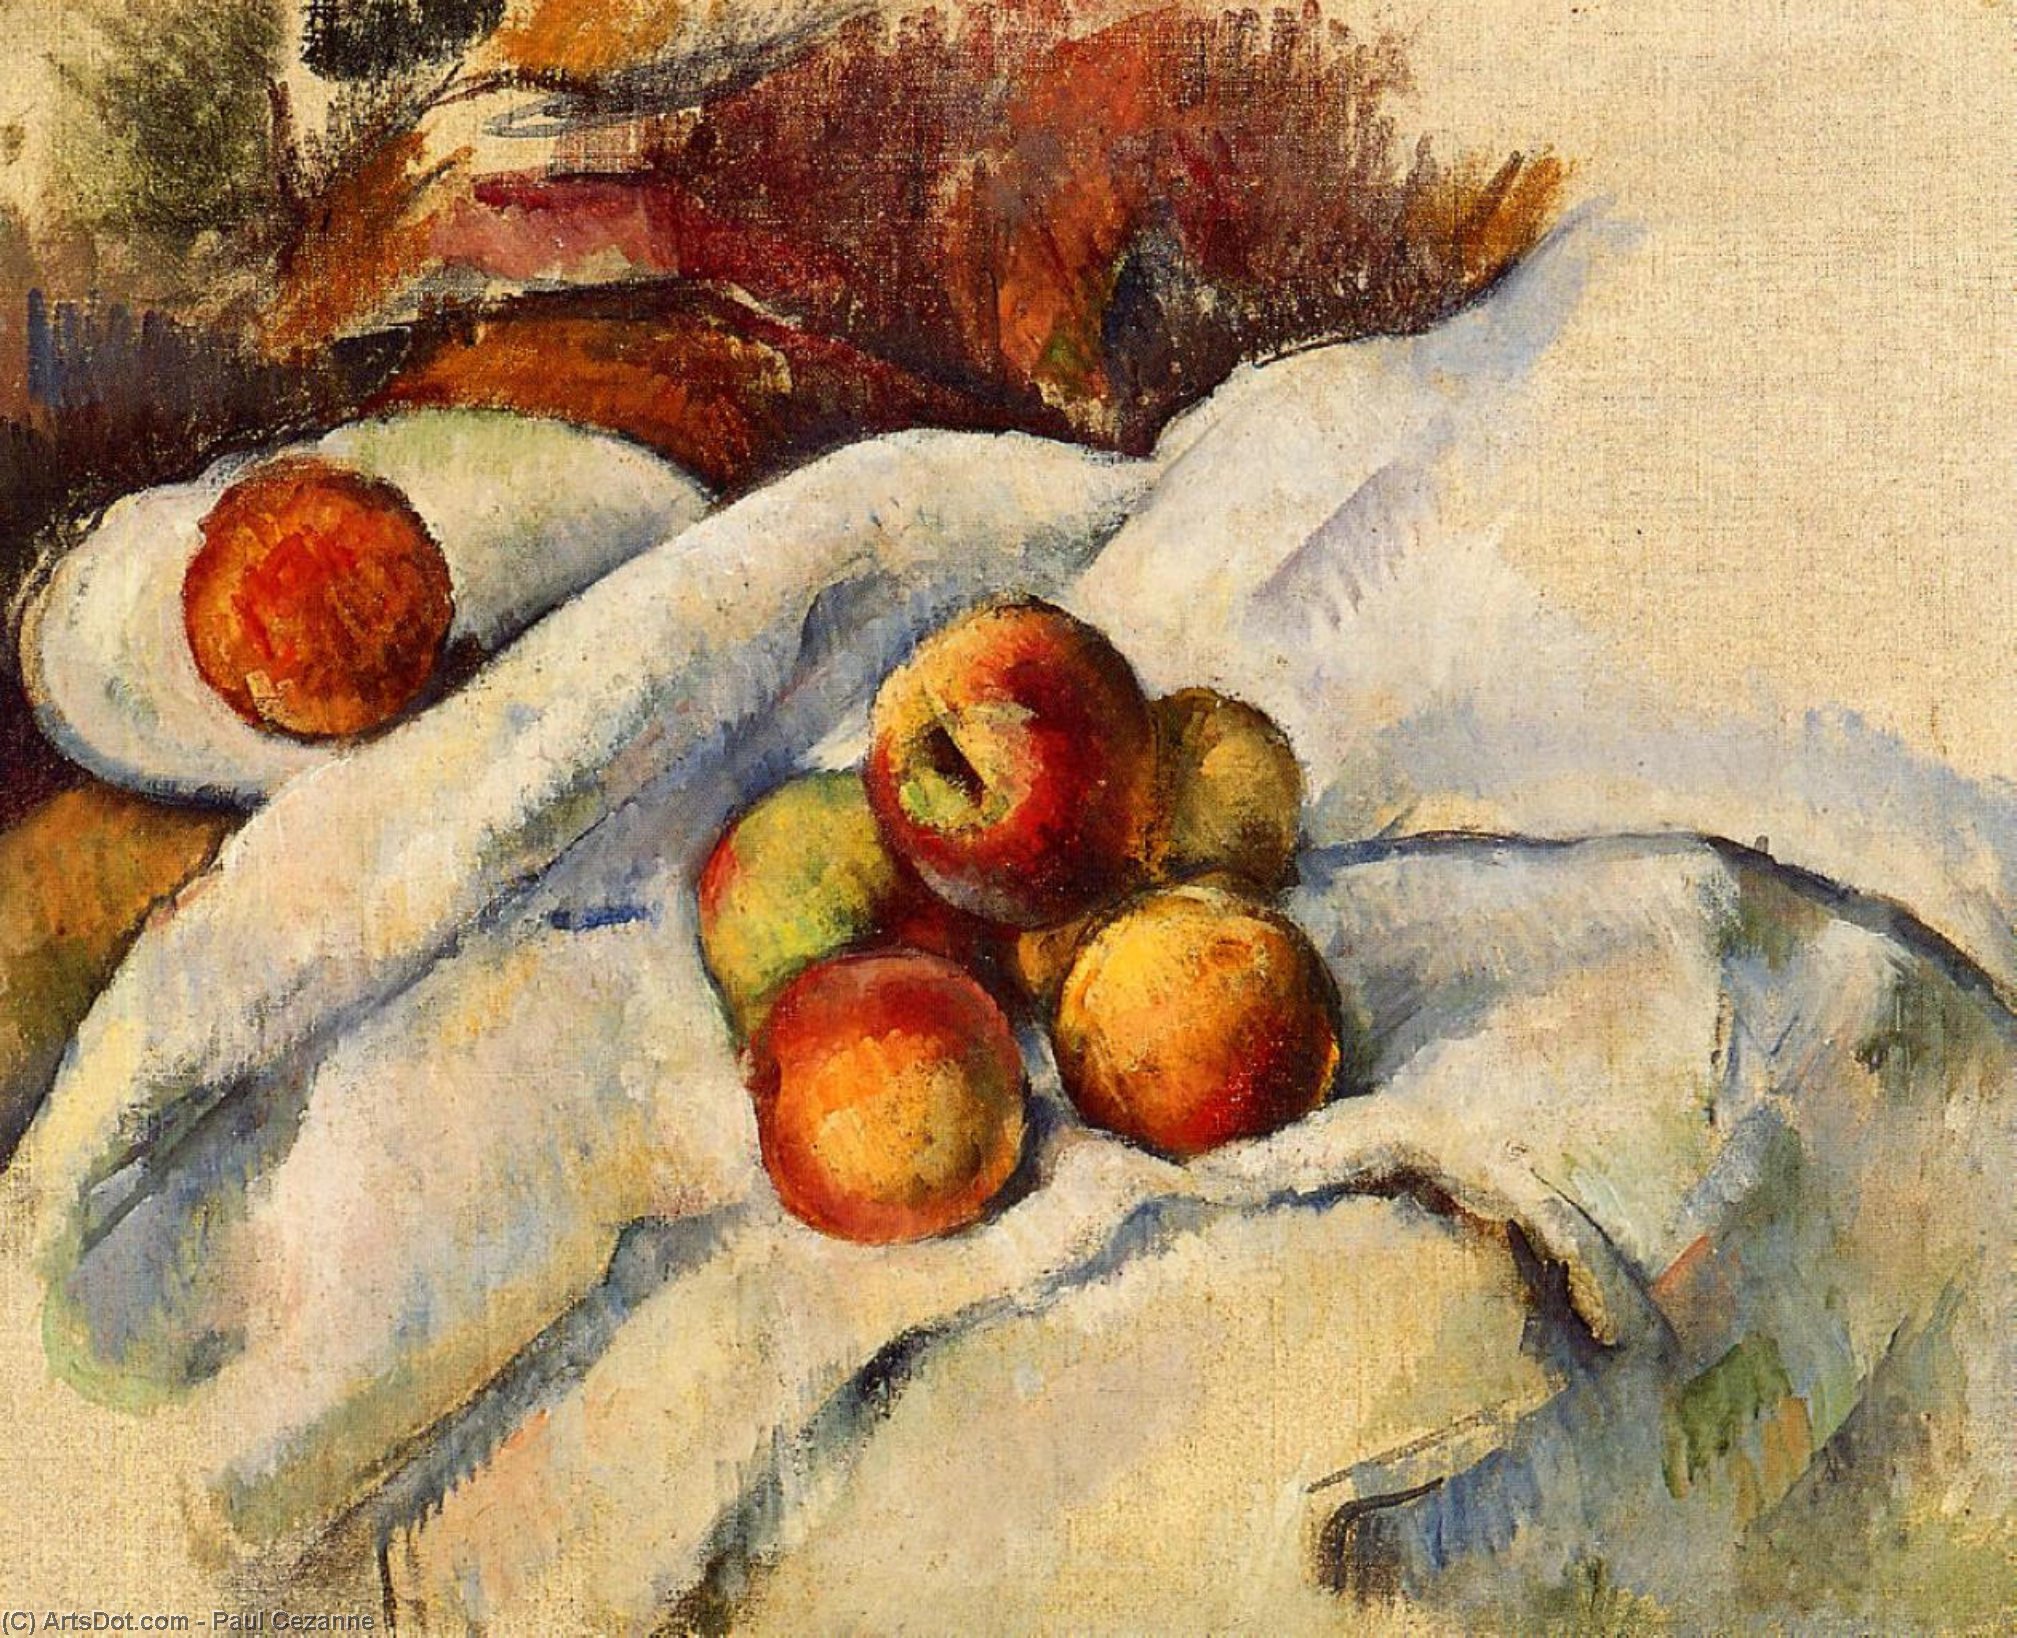 WikiOO.org - Encyclopedia of Fine Arts - Malba, Artwork Paul Cezanne - Apples on a Sheet